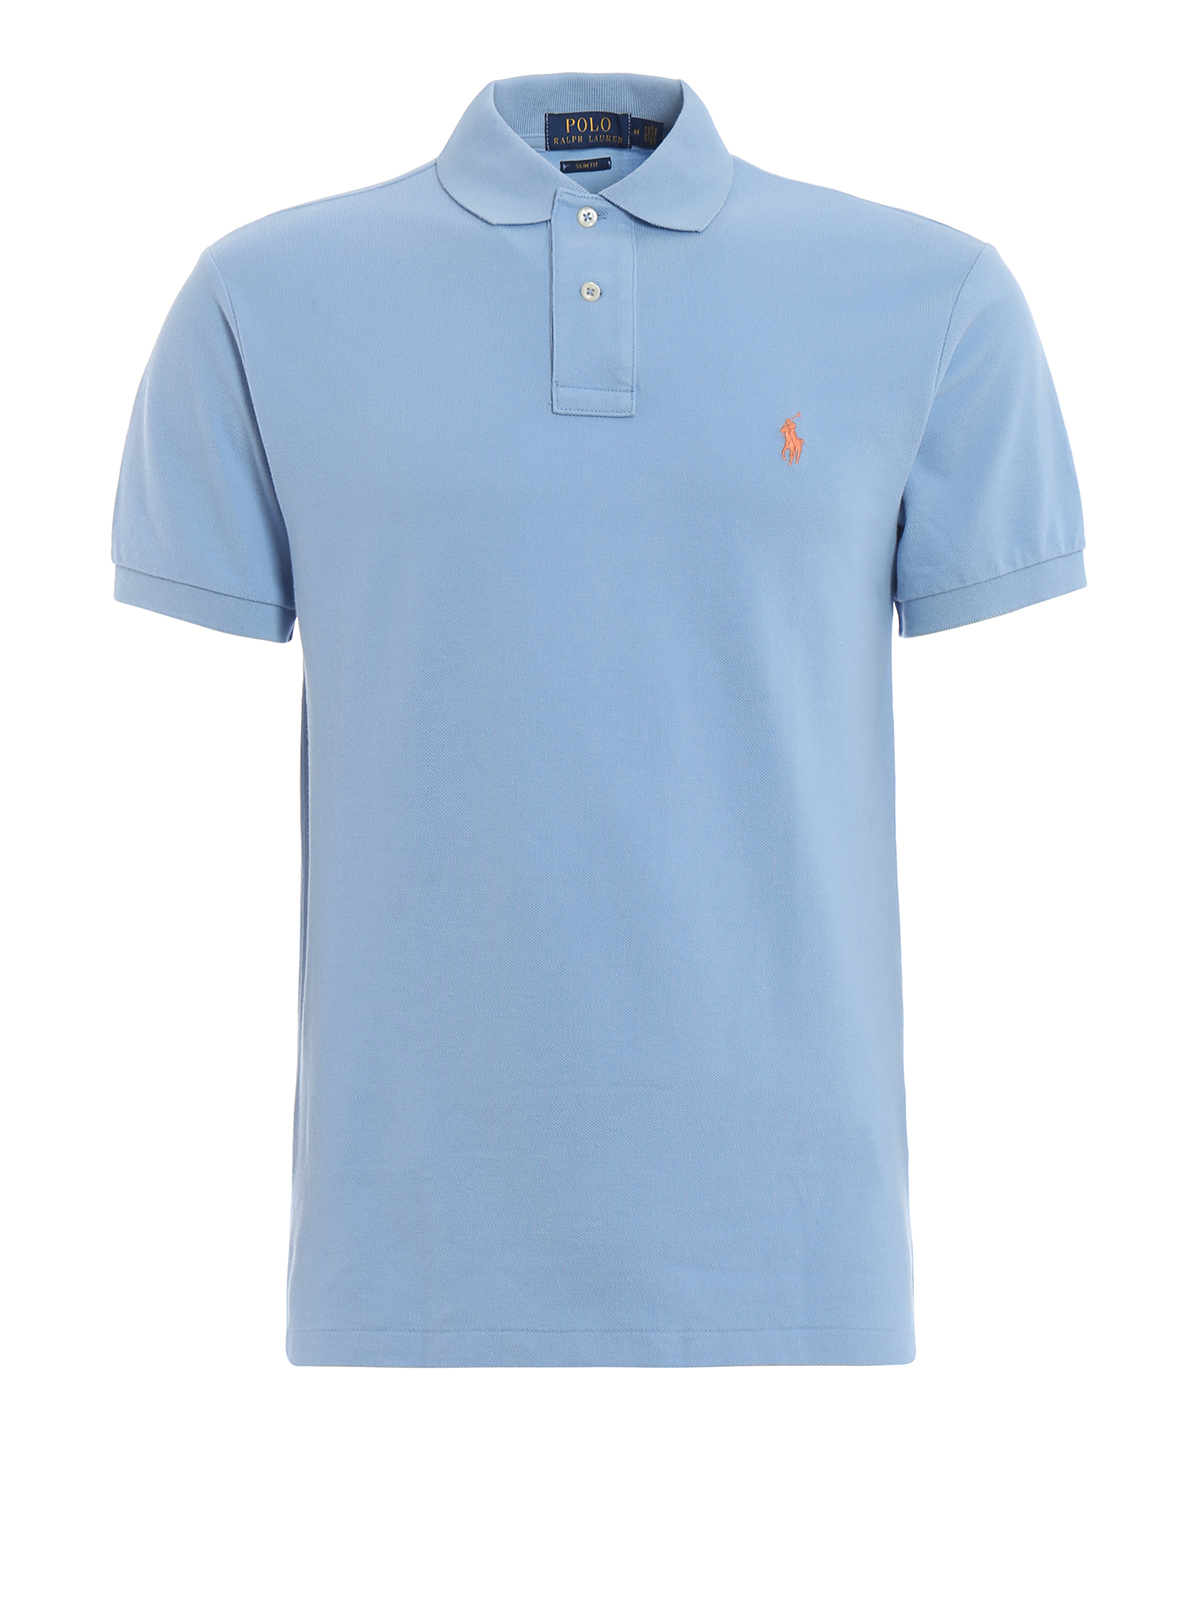 Light blue pique cotton polo shirt 